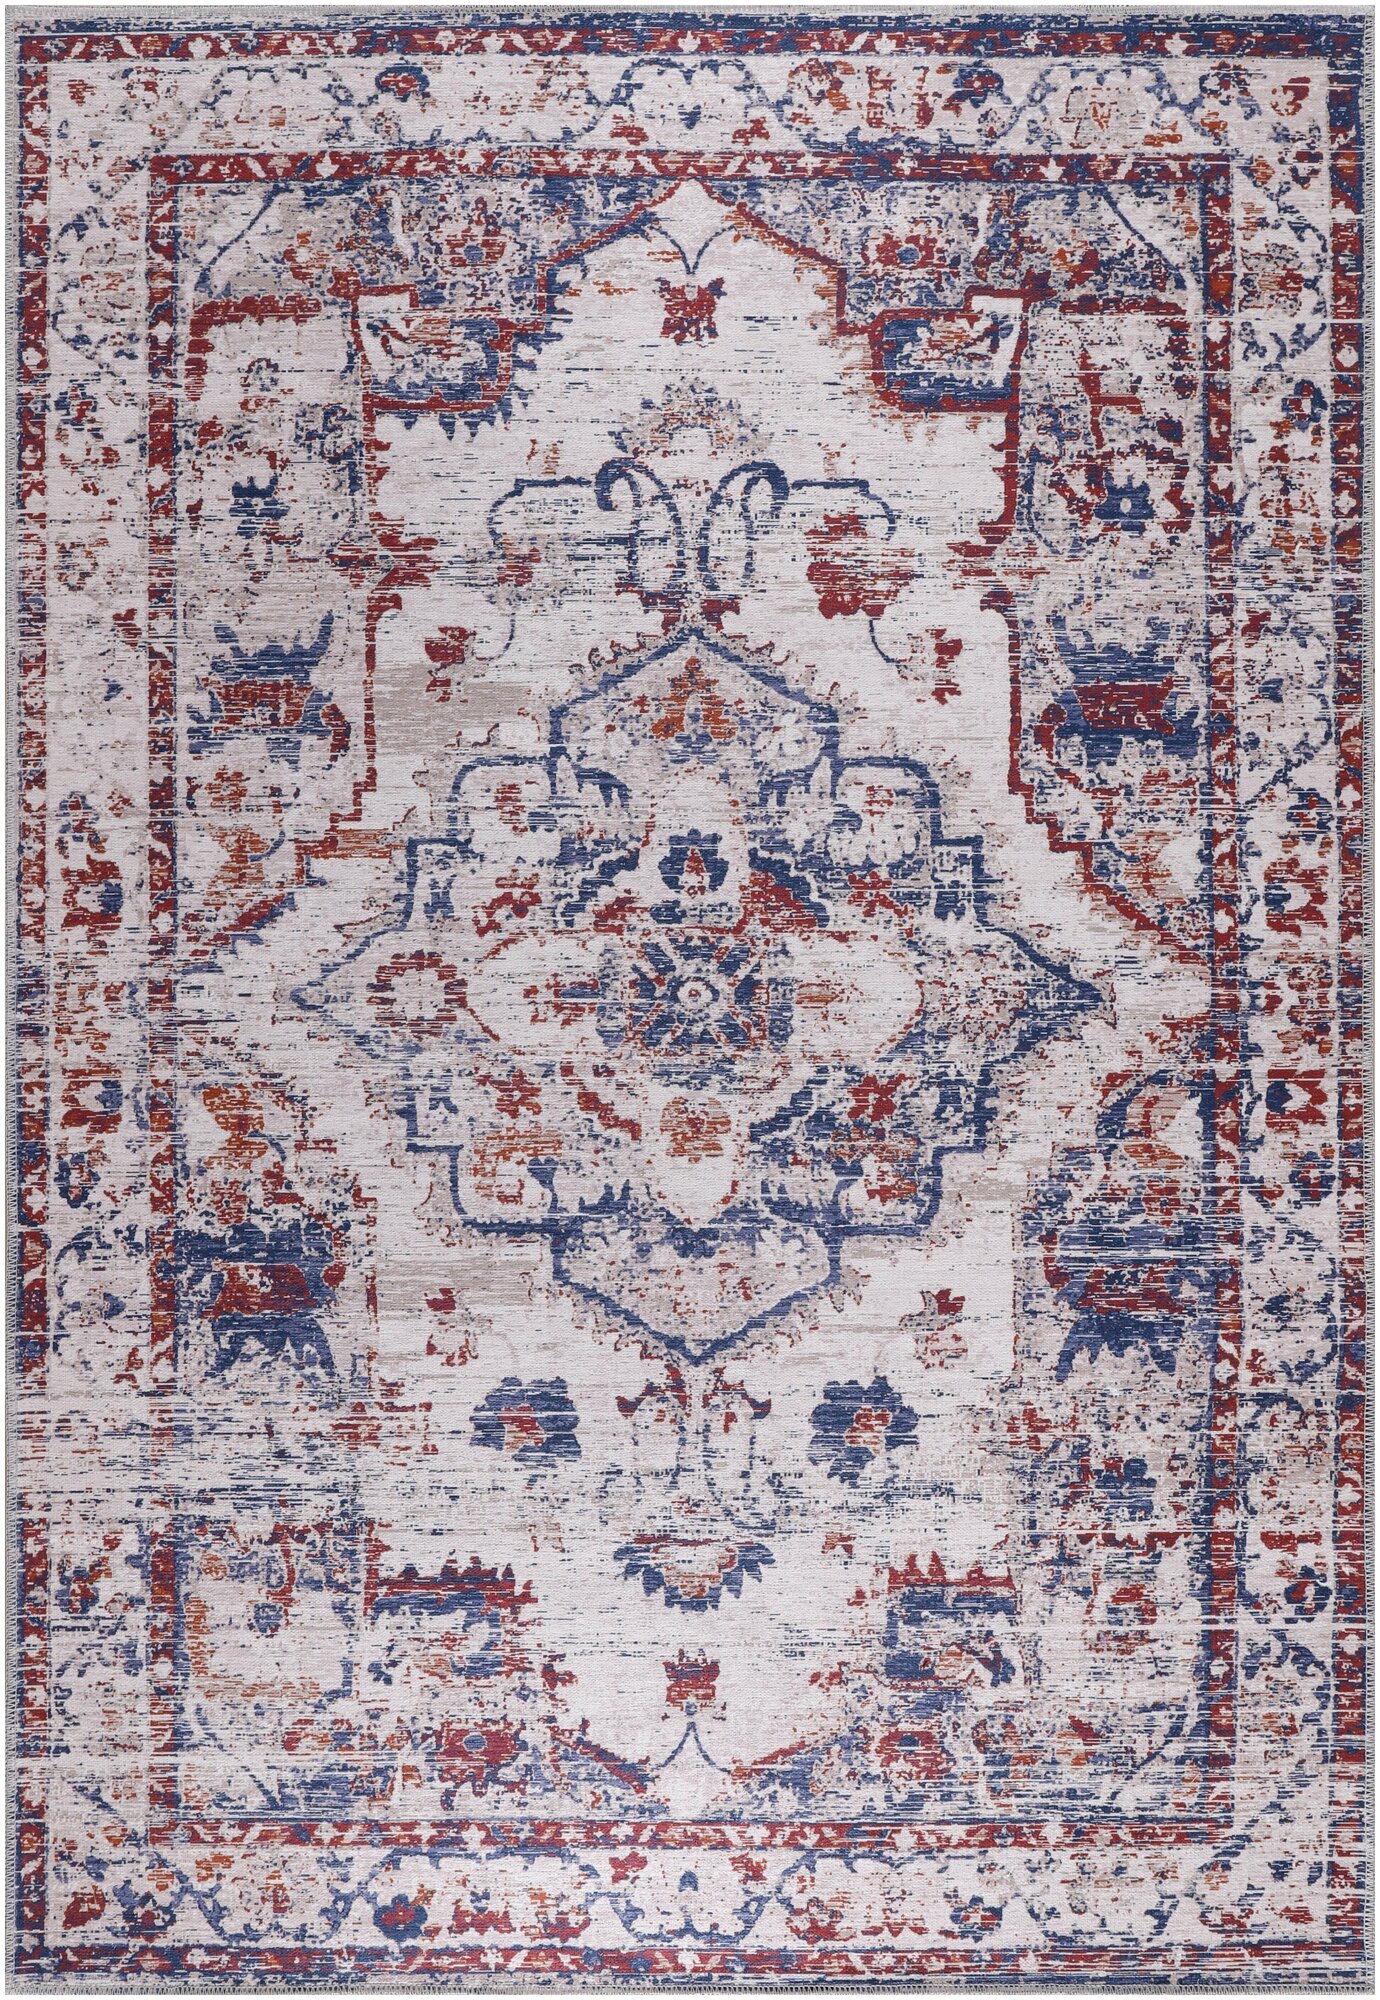 Ковер прикроватный, придверный хлопковый, ковер турецкий килим, DivaHome,60X90 cм, безворсовый , с оригинальным принтом.